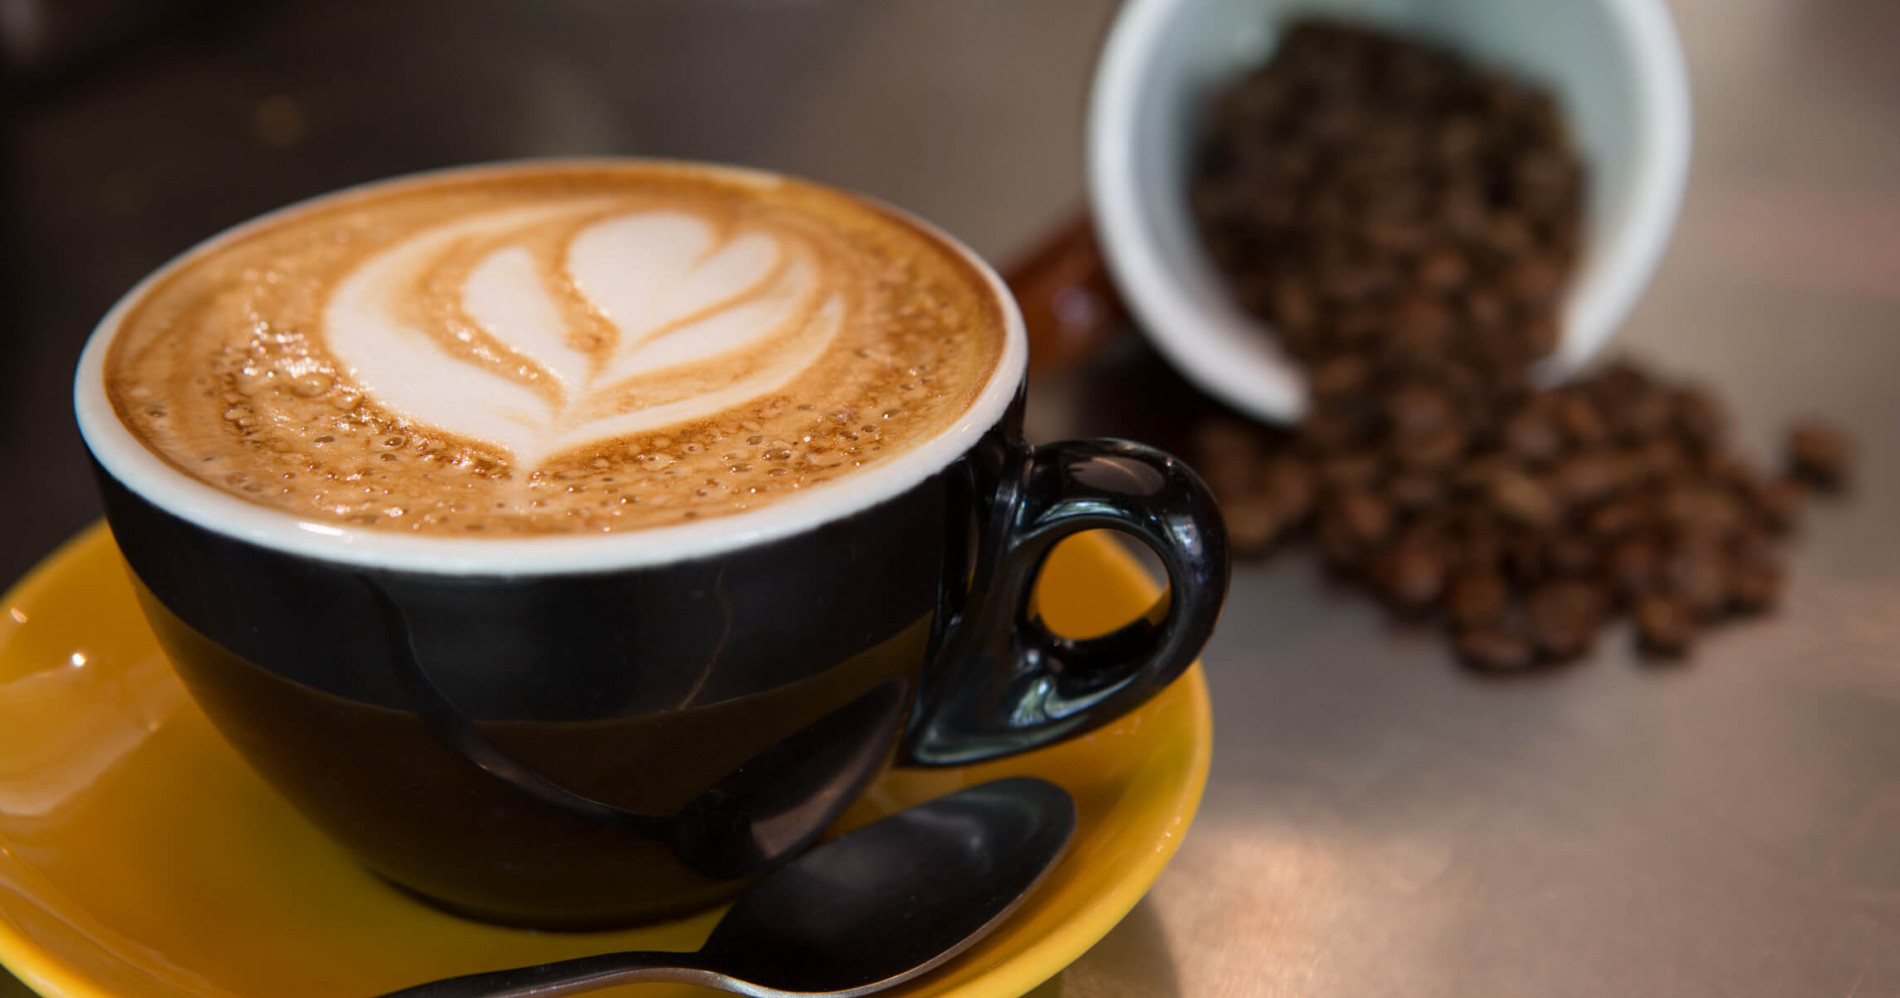 Manfaat kopi untuk kesehatan dan kecantikan (Sumber gambar: mldspot.com)